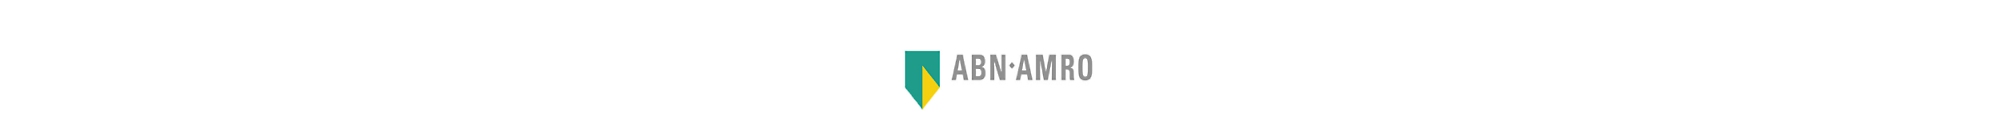 Logotipo do ABN AMRO